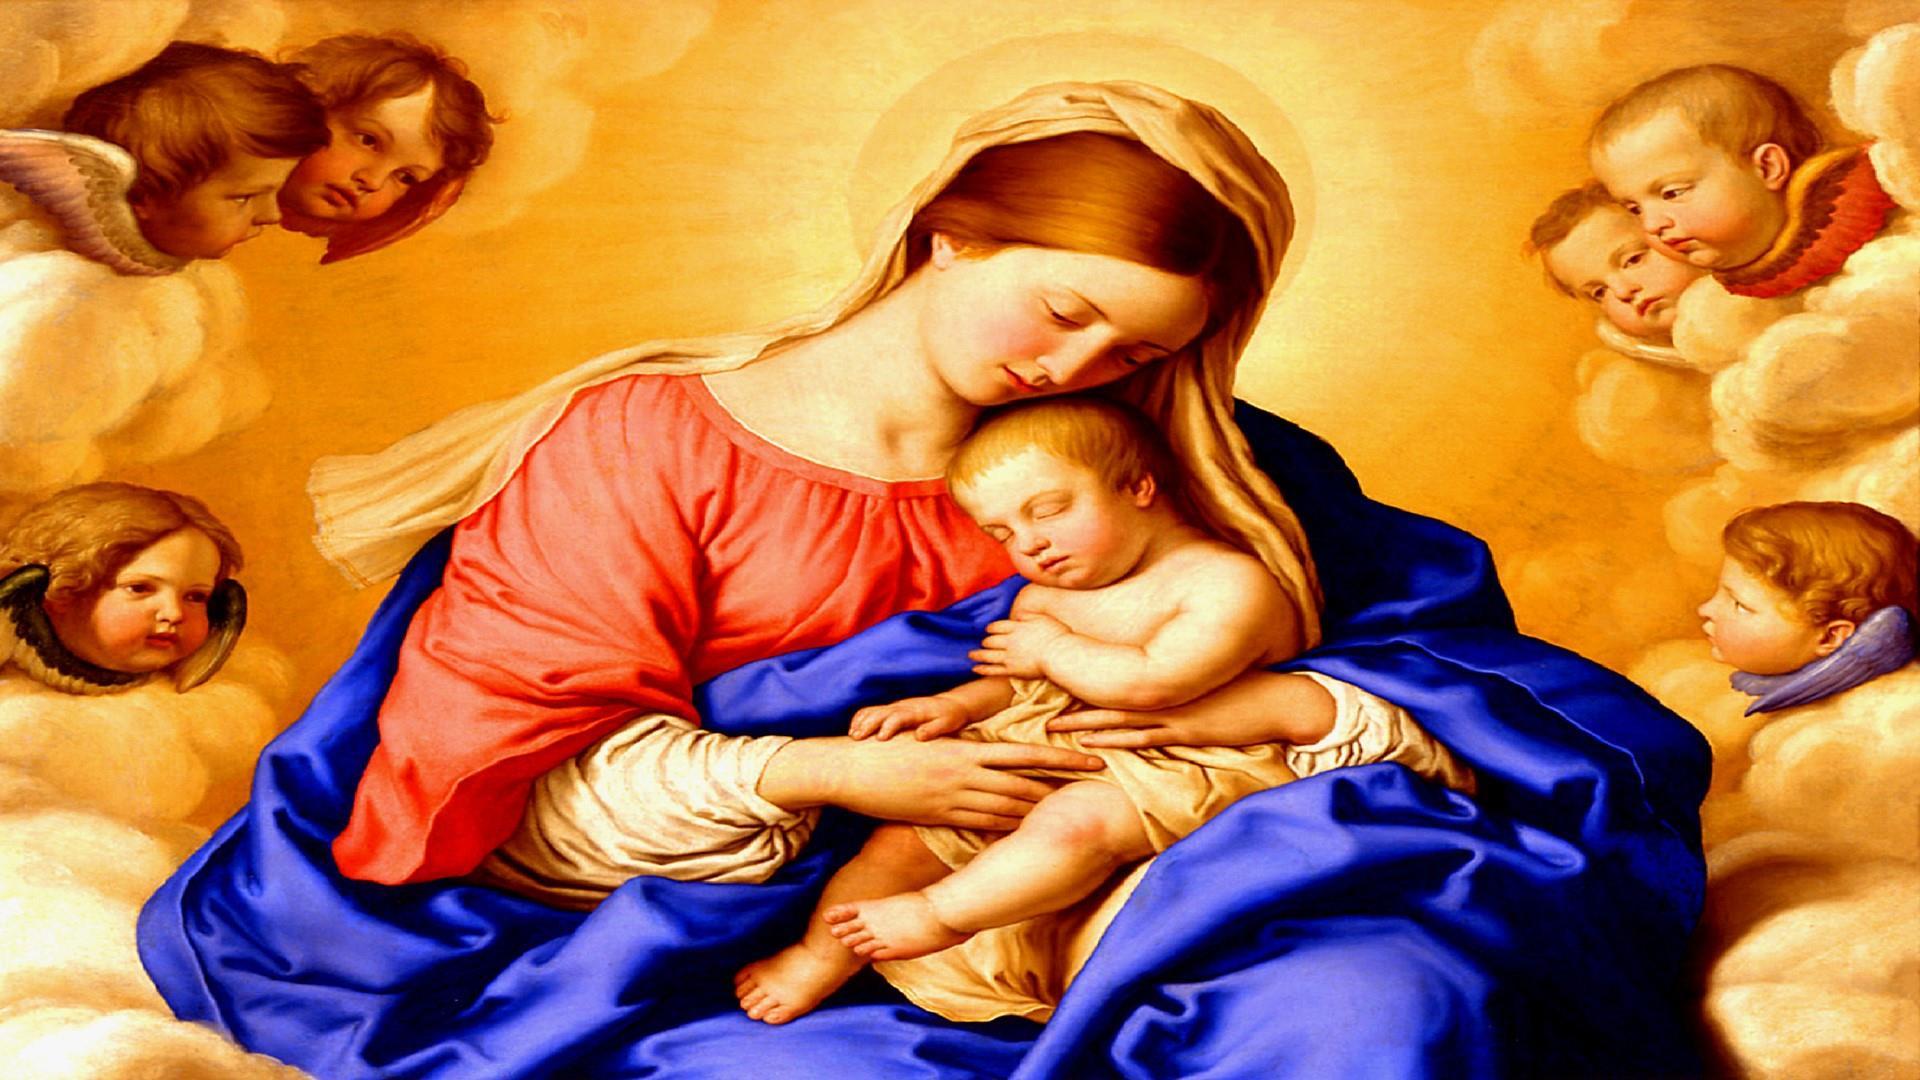 Virgin Mary With Child Jesus Wallpaper. Wallpaper Studio 10. Tens